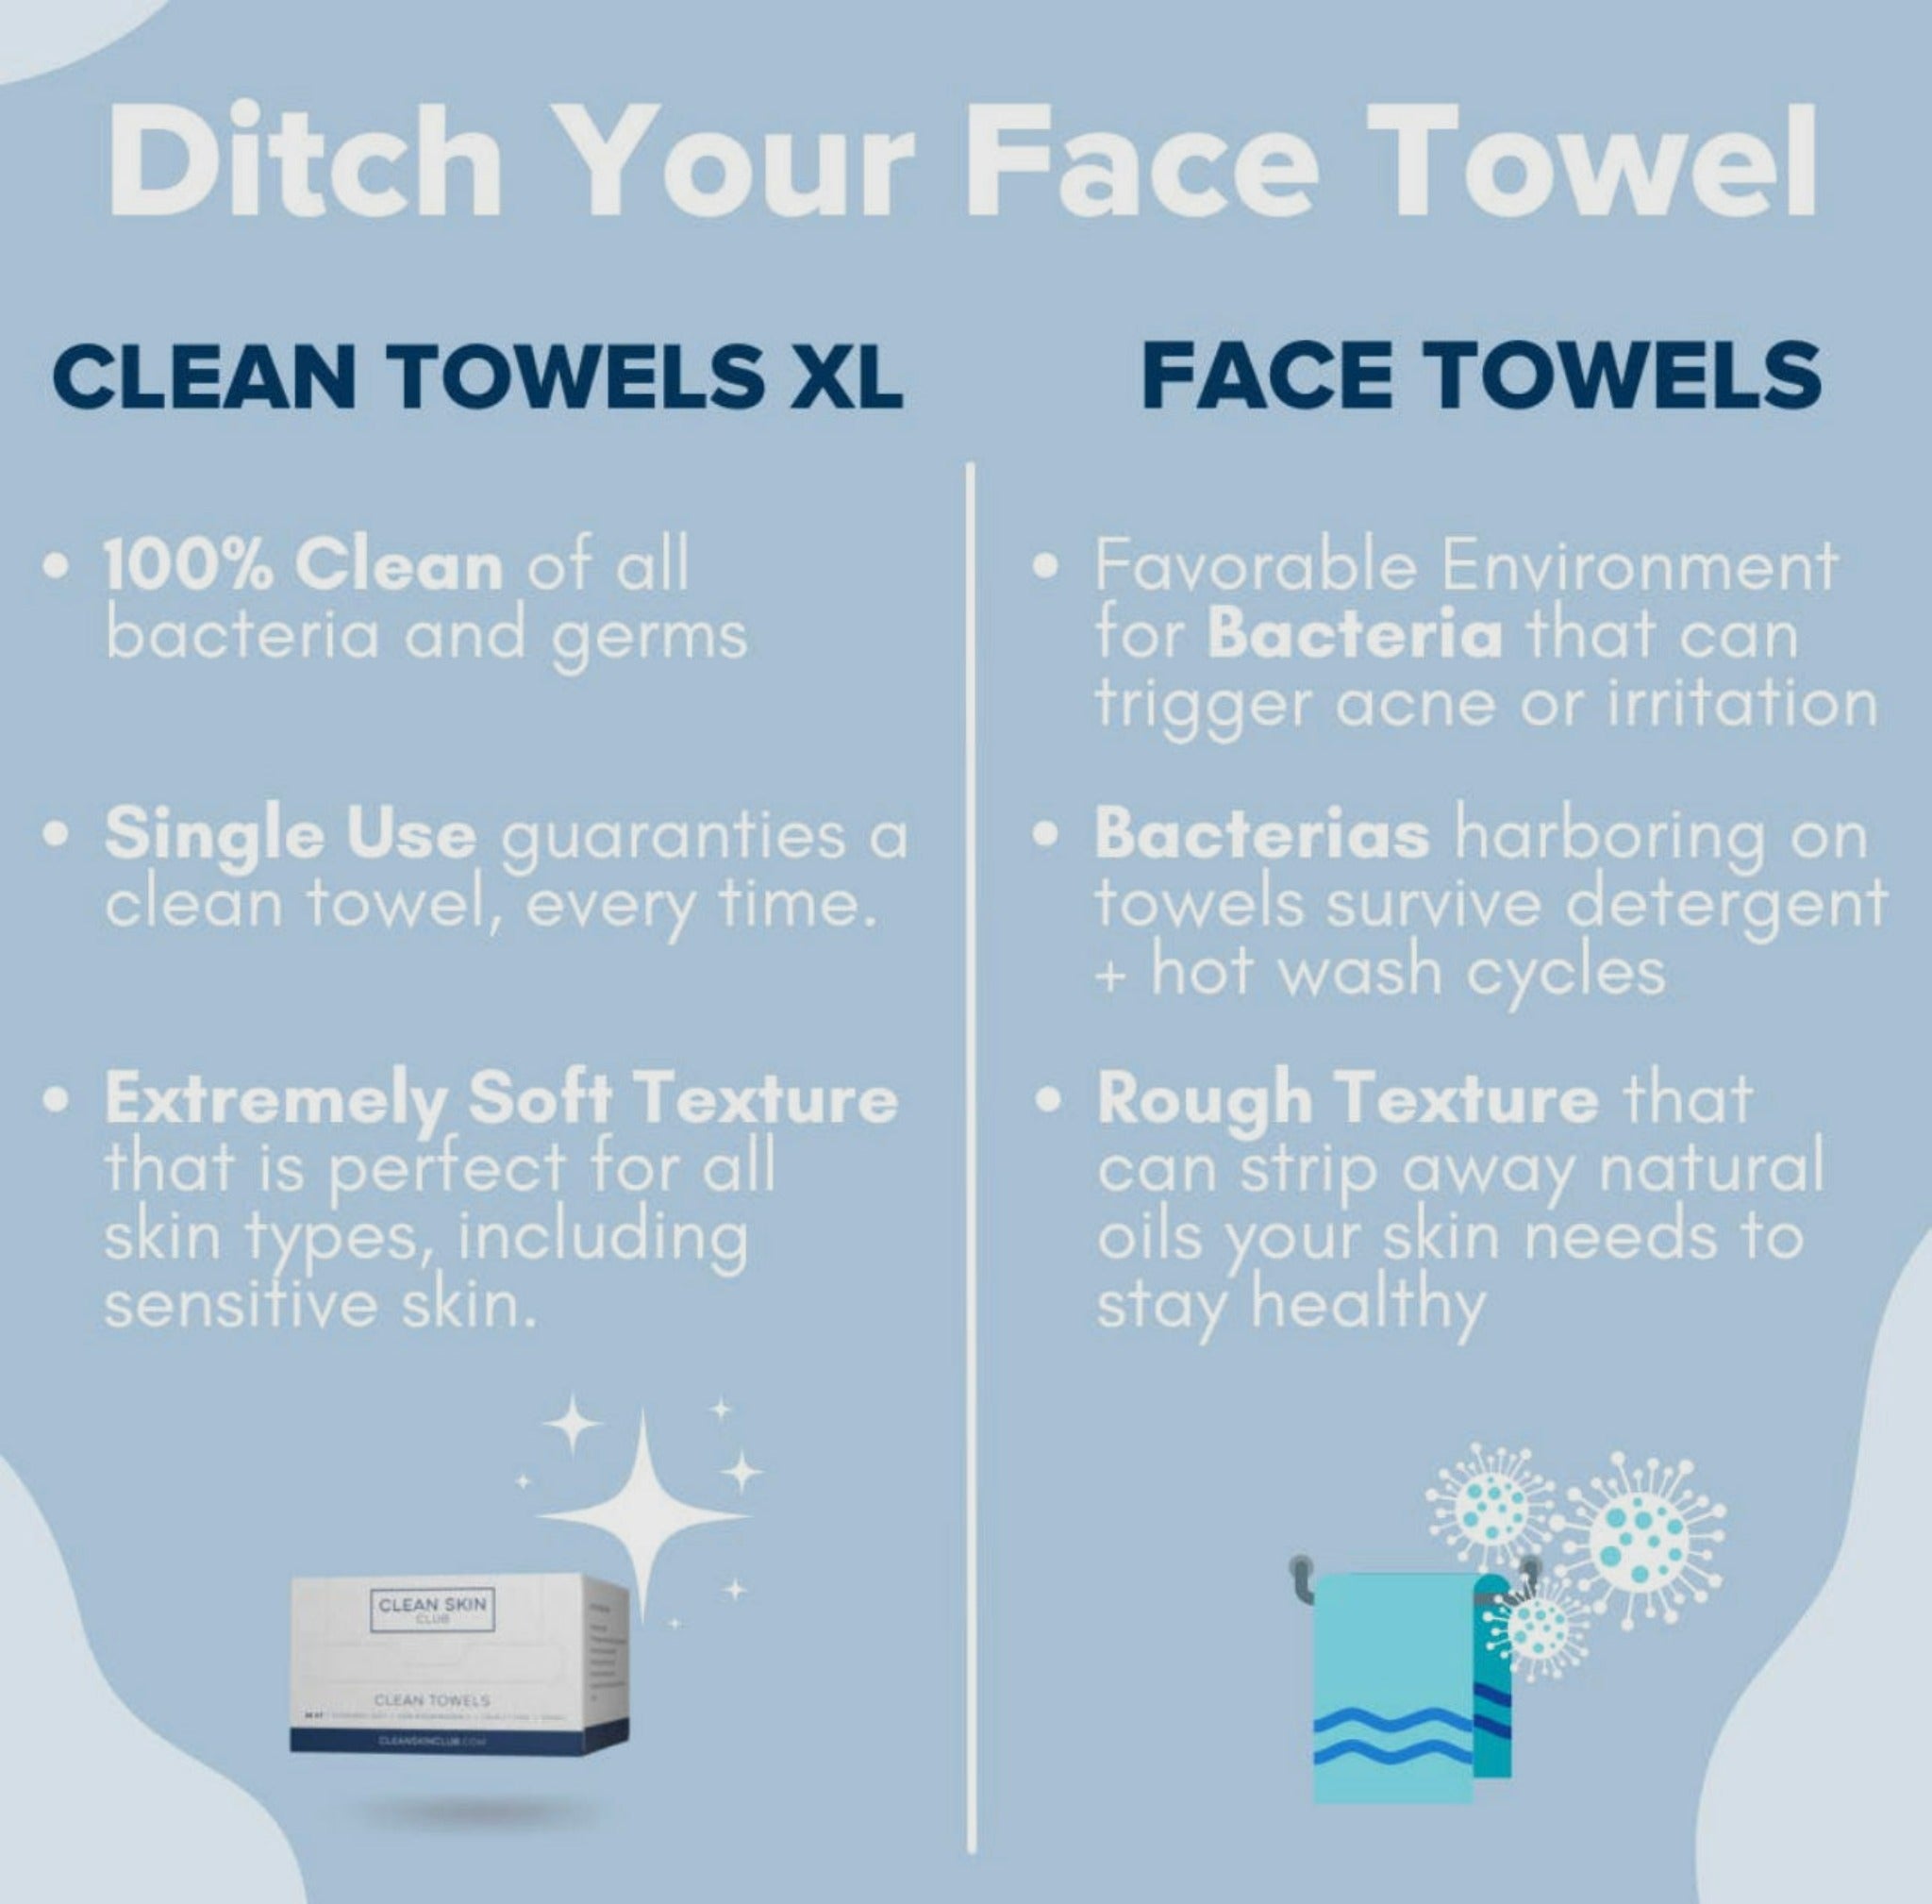 Clean Skin Club - Clean Towels XL Travel